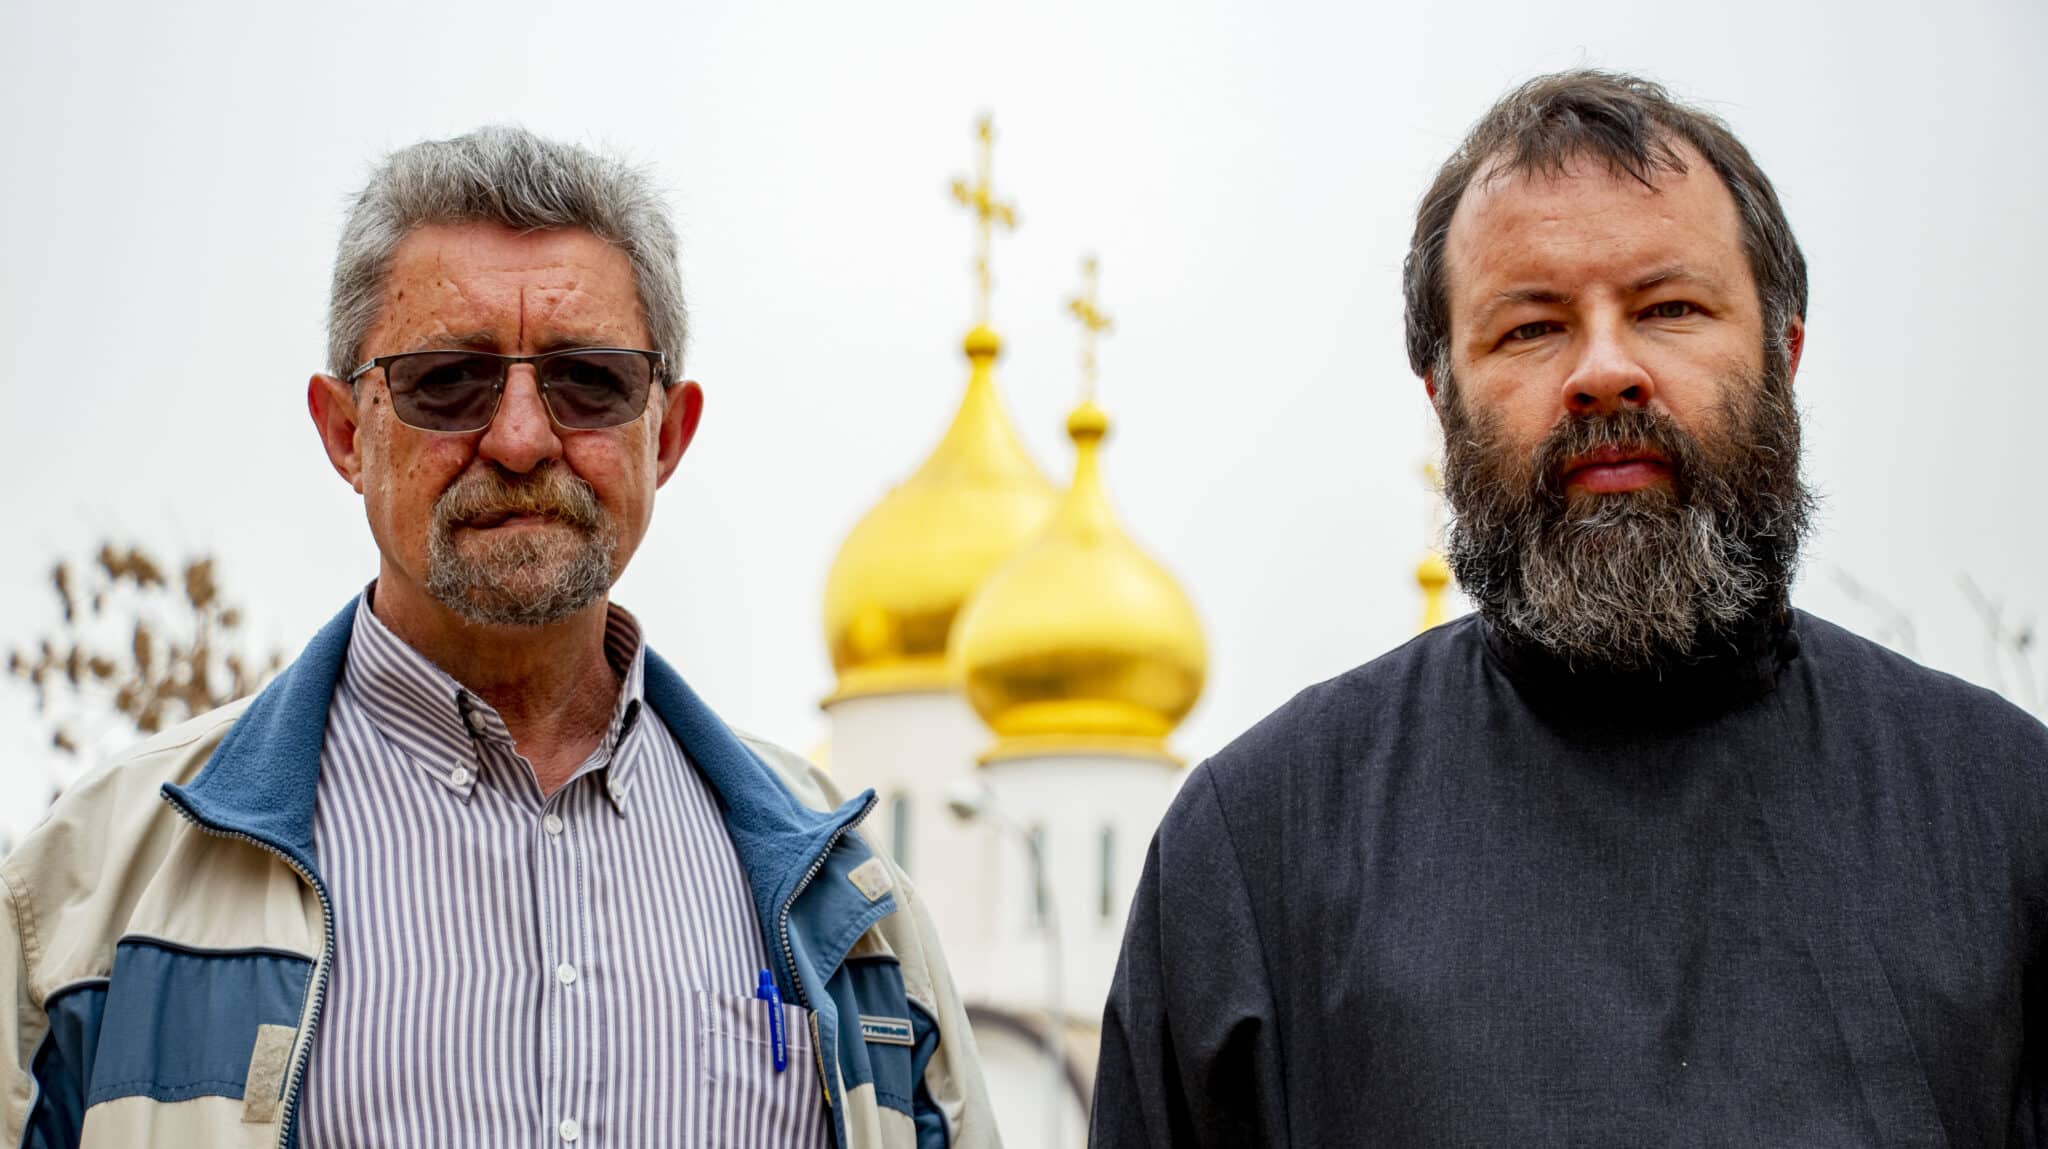 Konstyantyn Trachuk y Andrej Kordochkin, sacerdotes de las iglesias ortodoxas ucraniana y rusa en Madrid